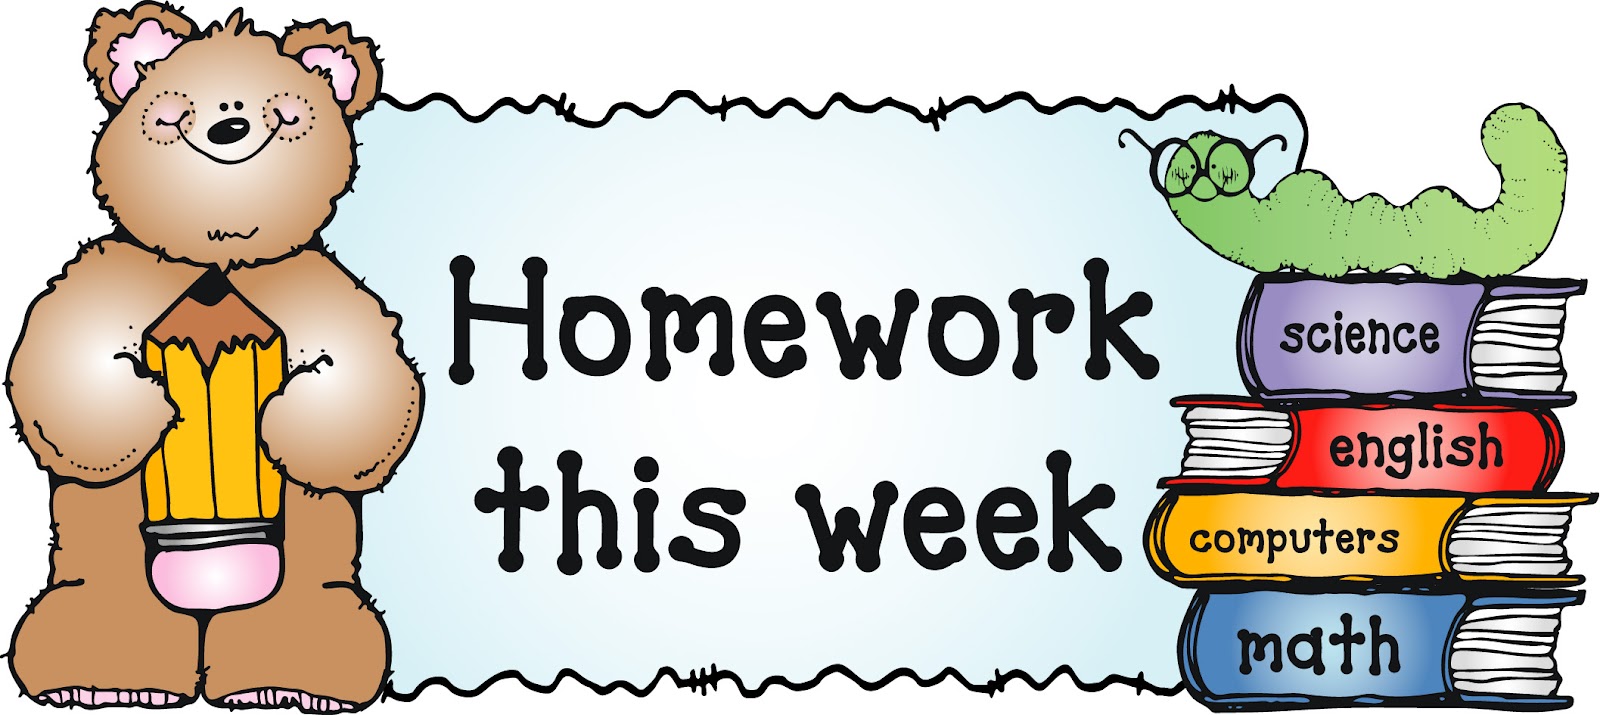 spelling homework clip art